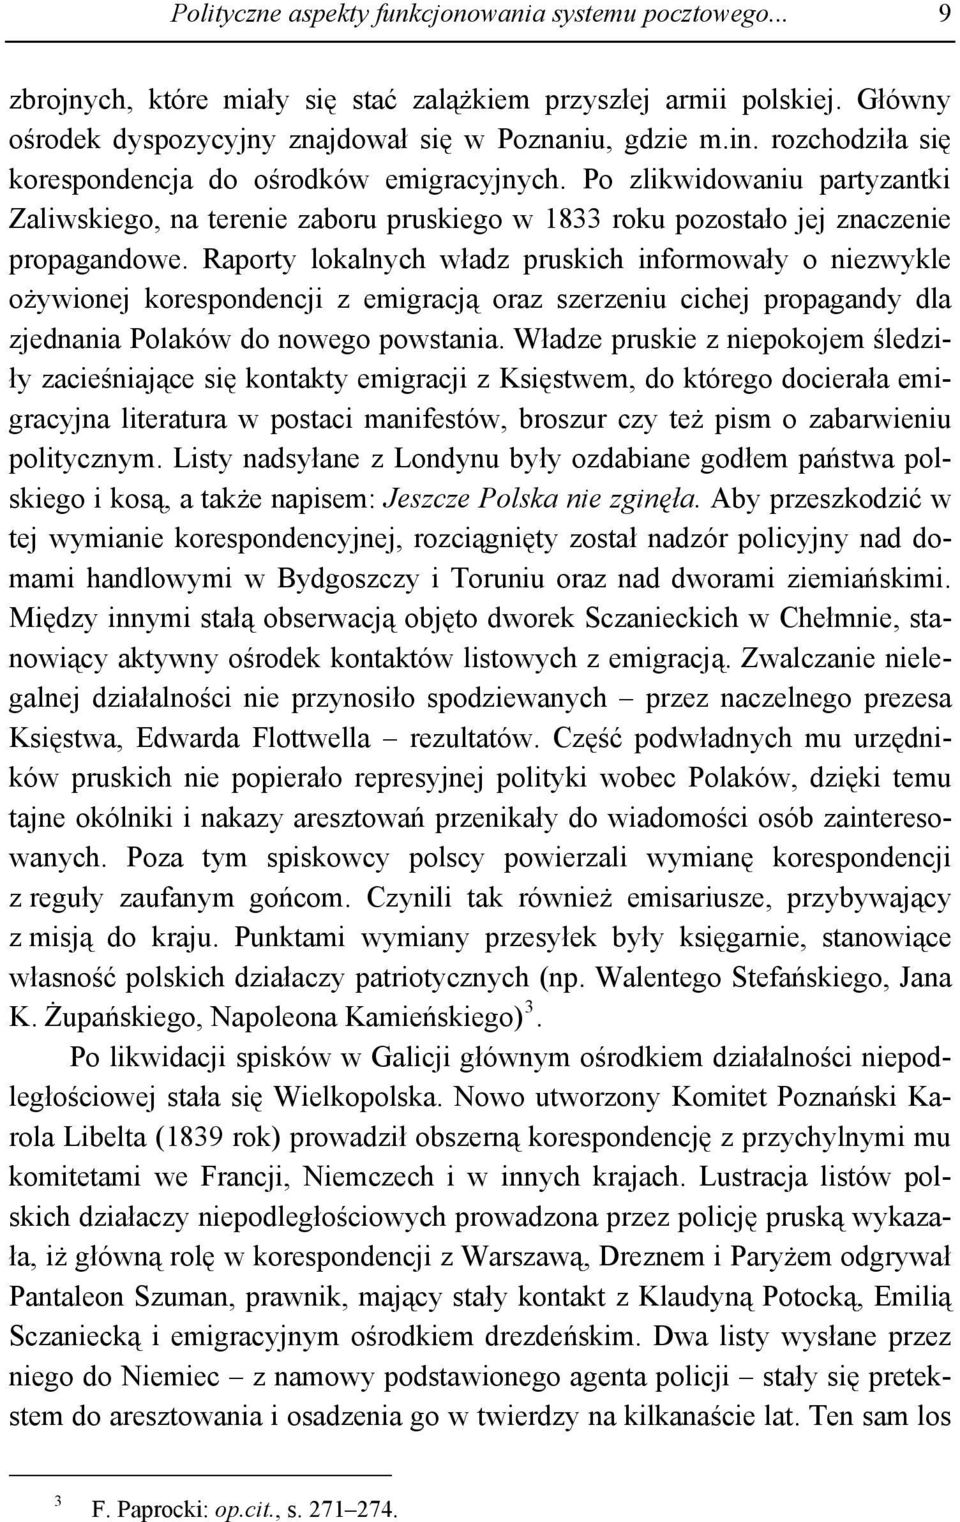 Raporty lokalnych władz pruskich informowały o niezwykle ożywionej korespondencji z emigracją oraz szerzeniu cichej propagandy dla zjednania Polaków do nowego powstania.